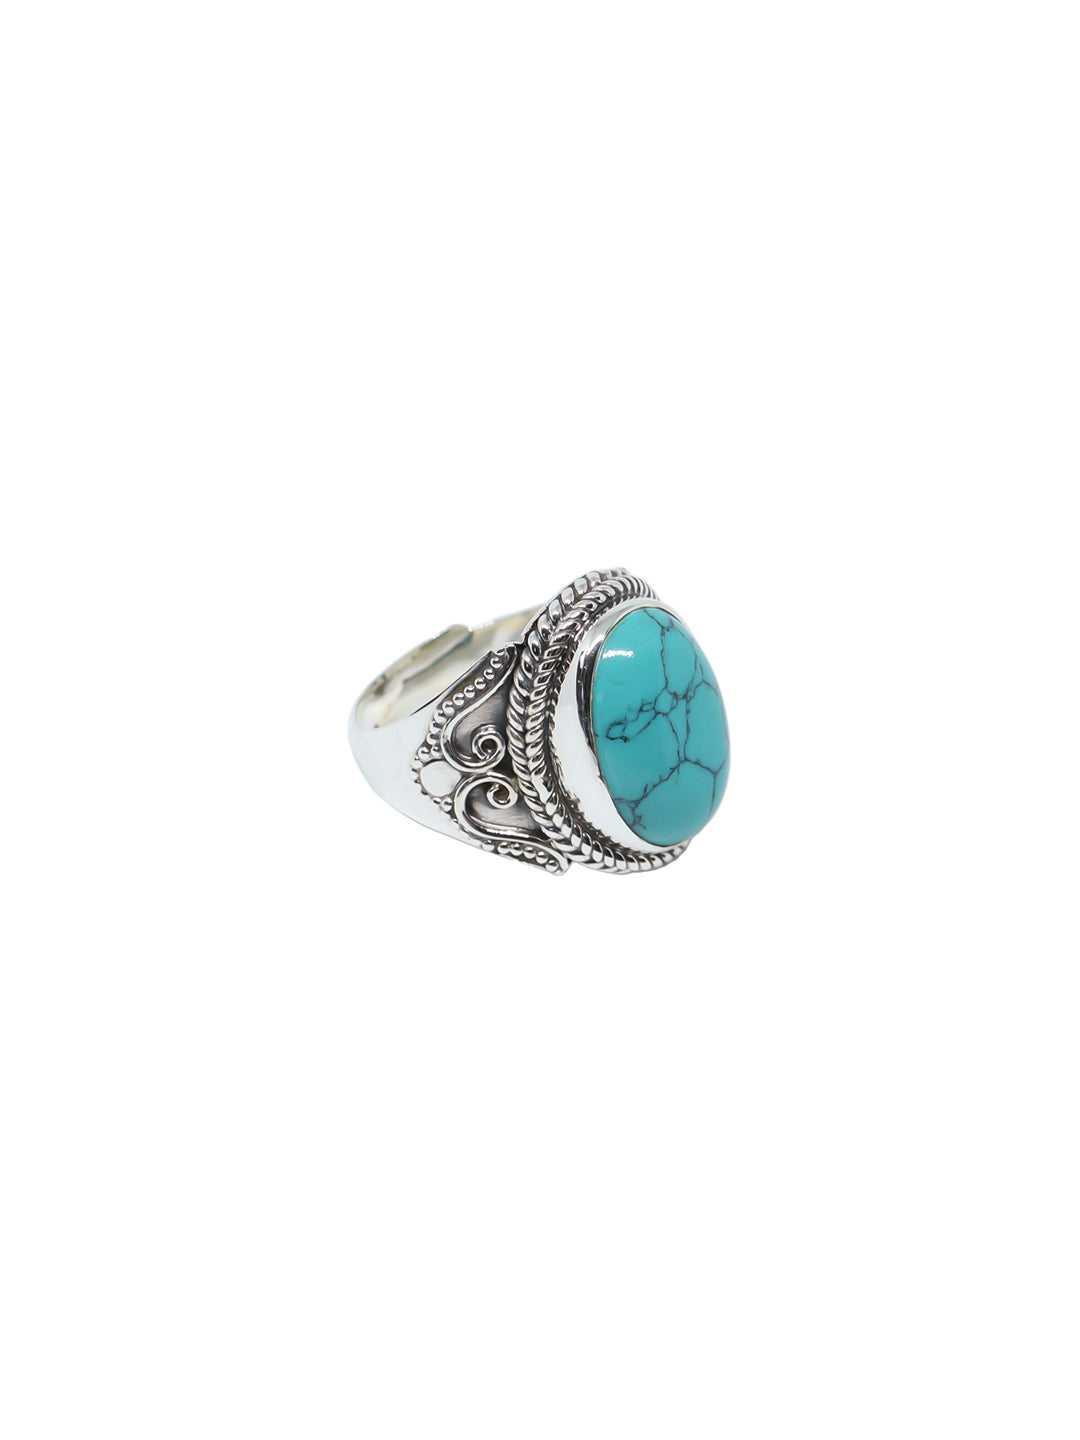 Bohemian Turquoise Ring